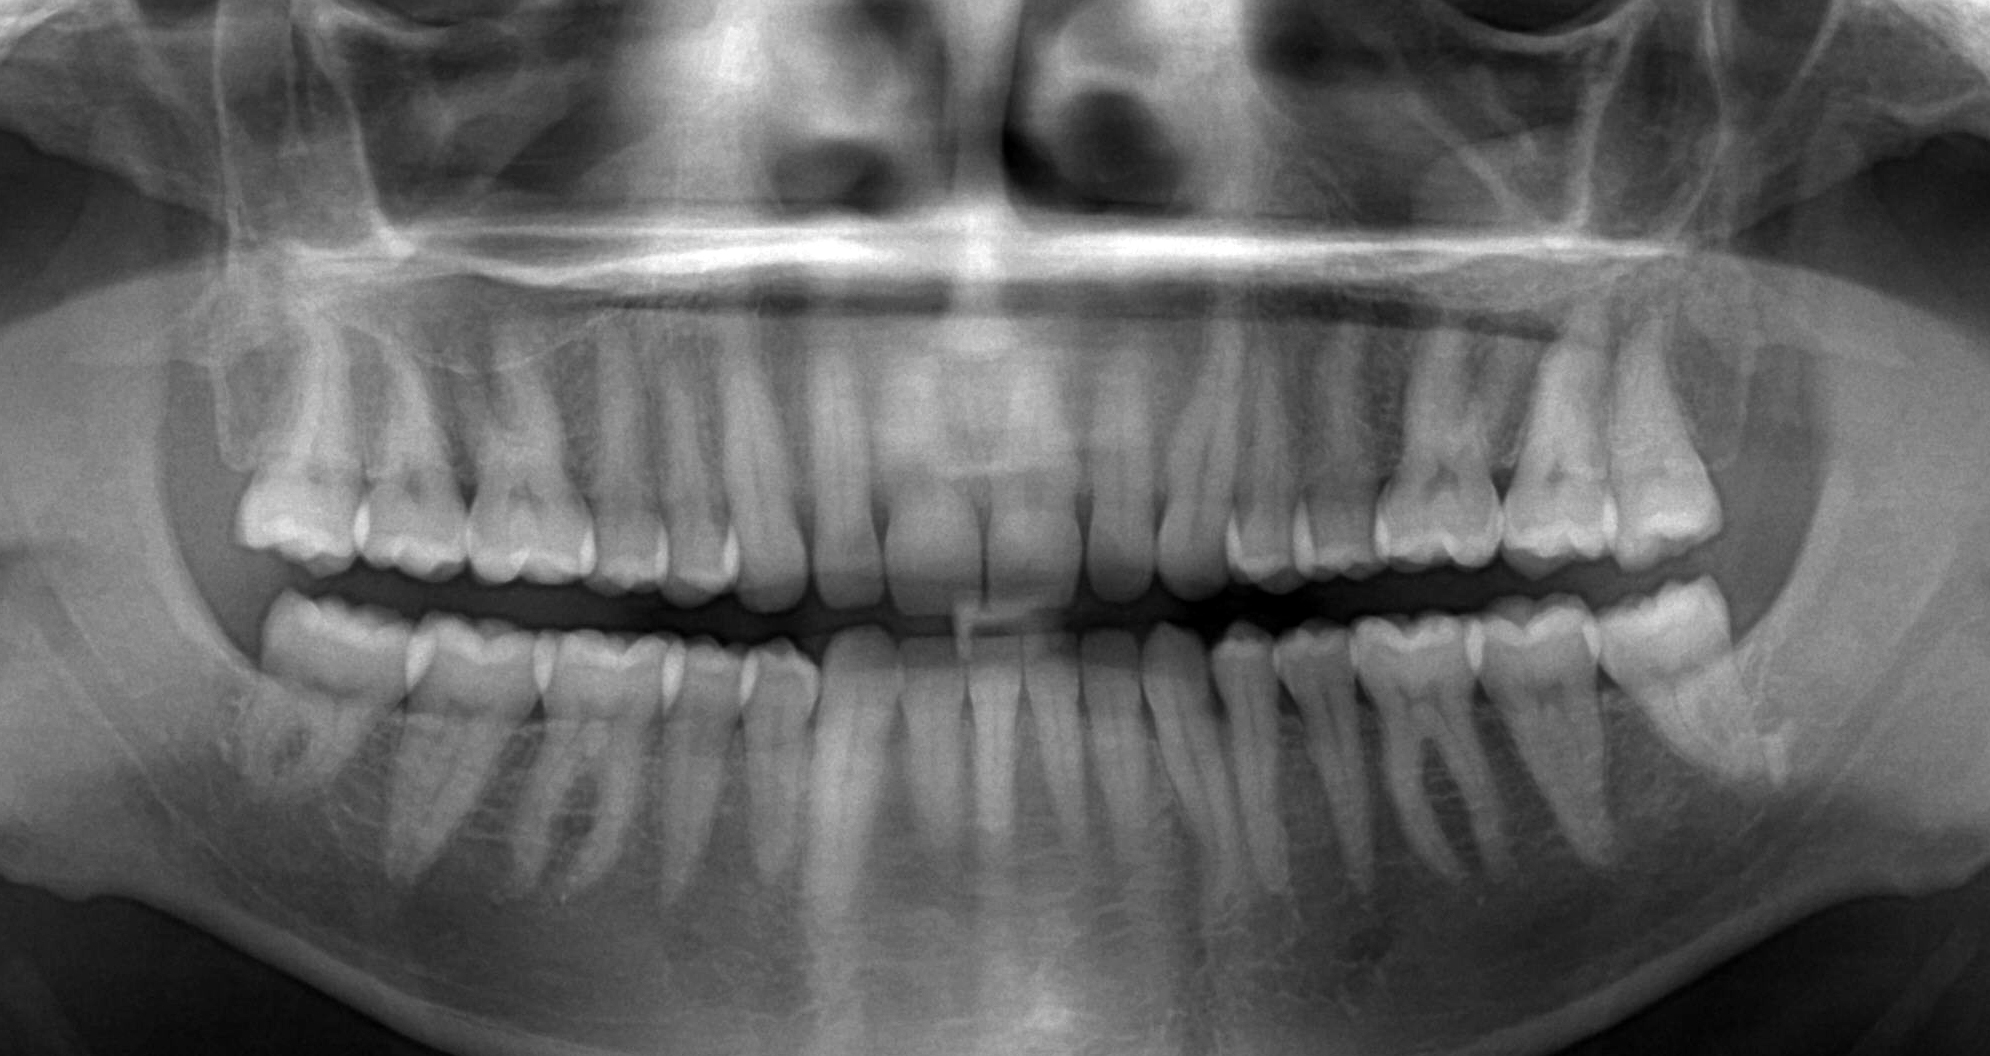 Панорамный снимок зубов - фото